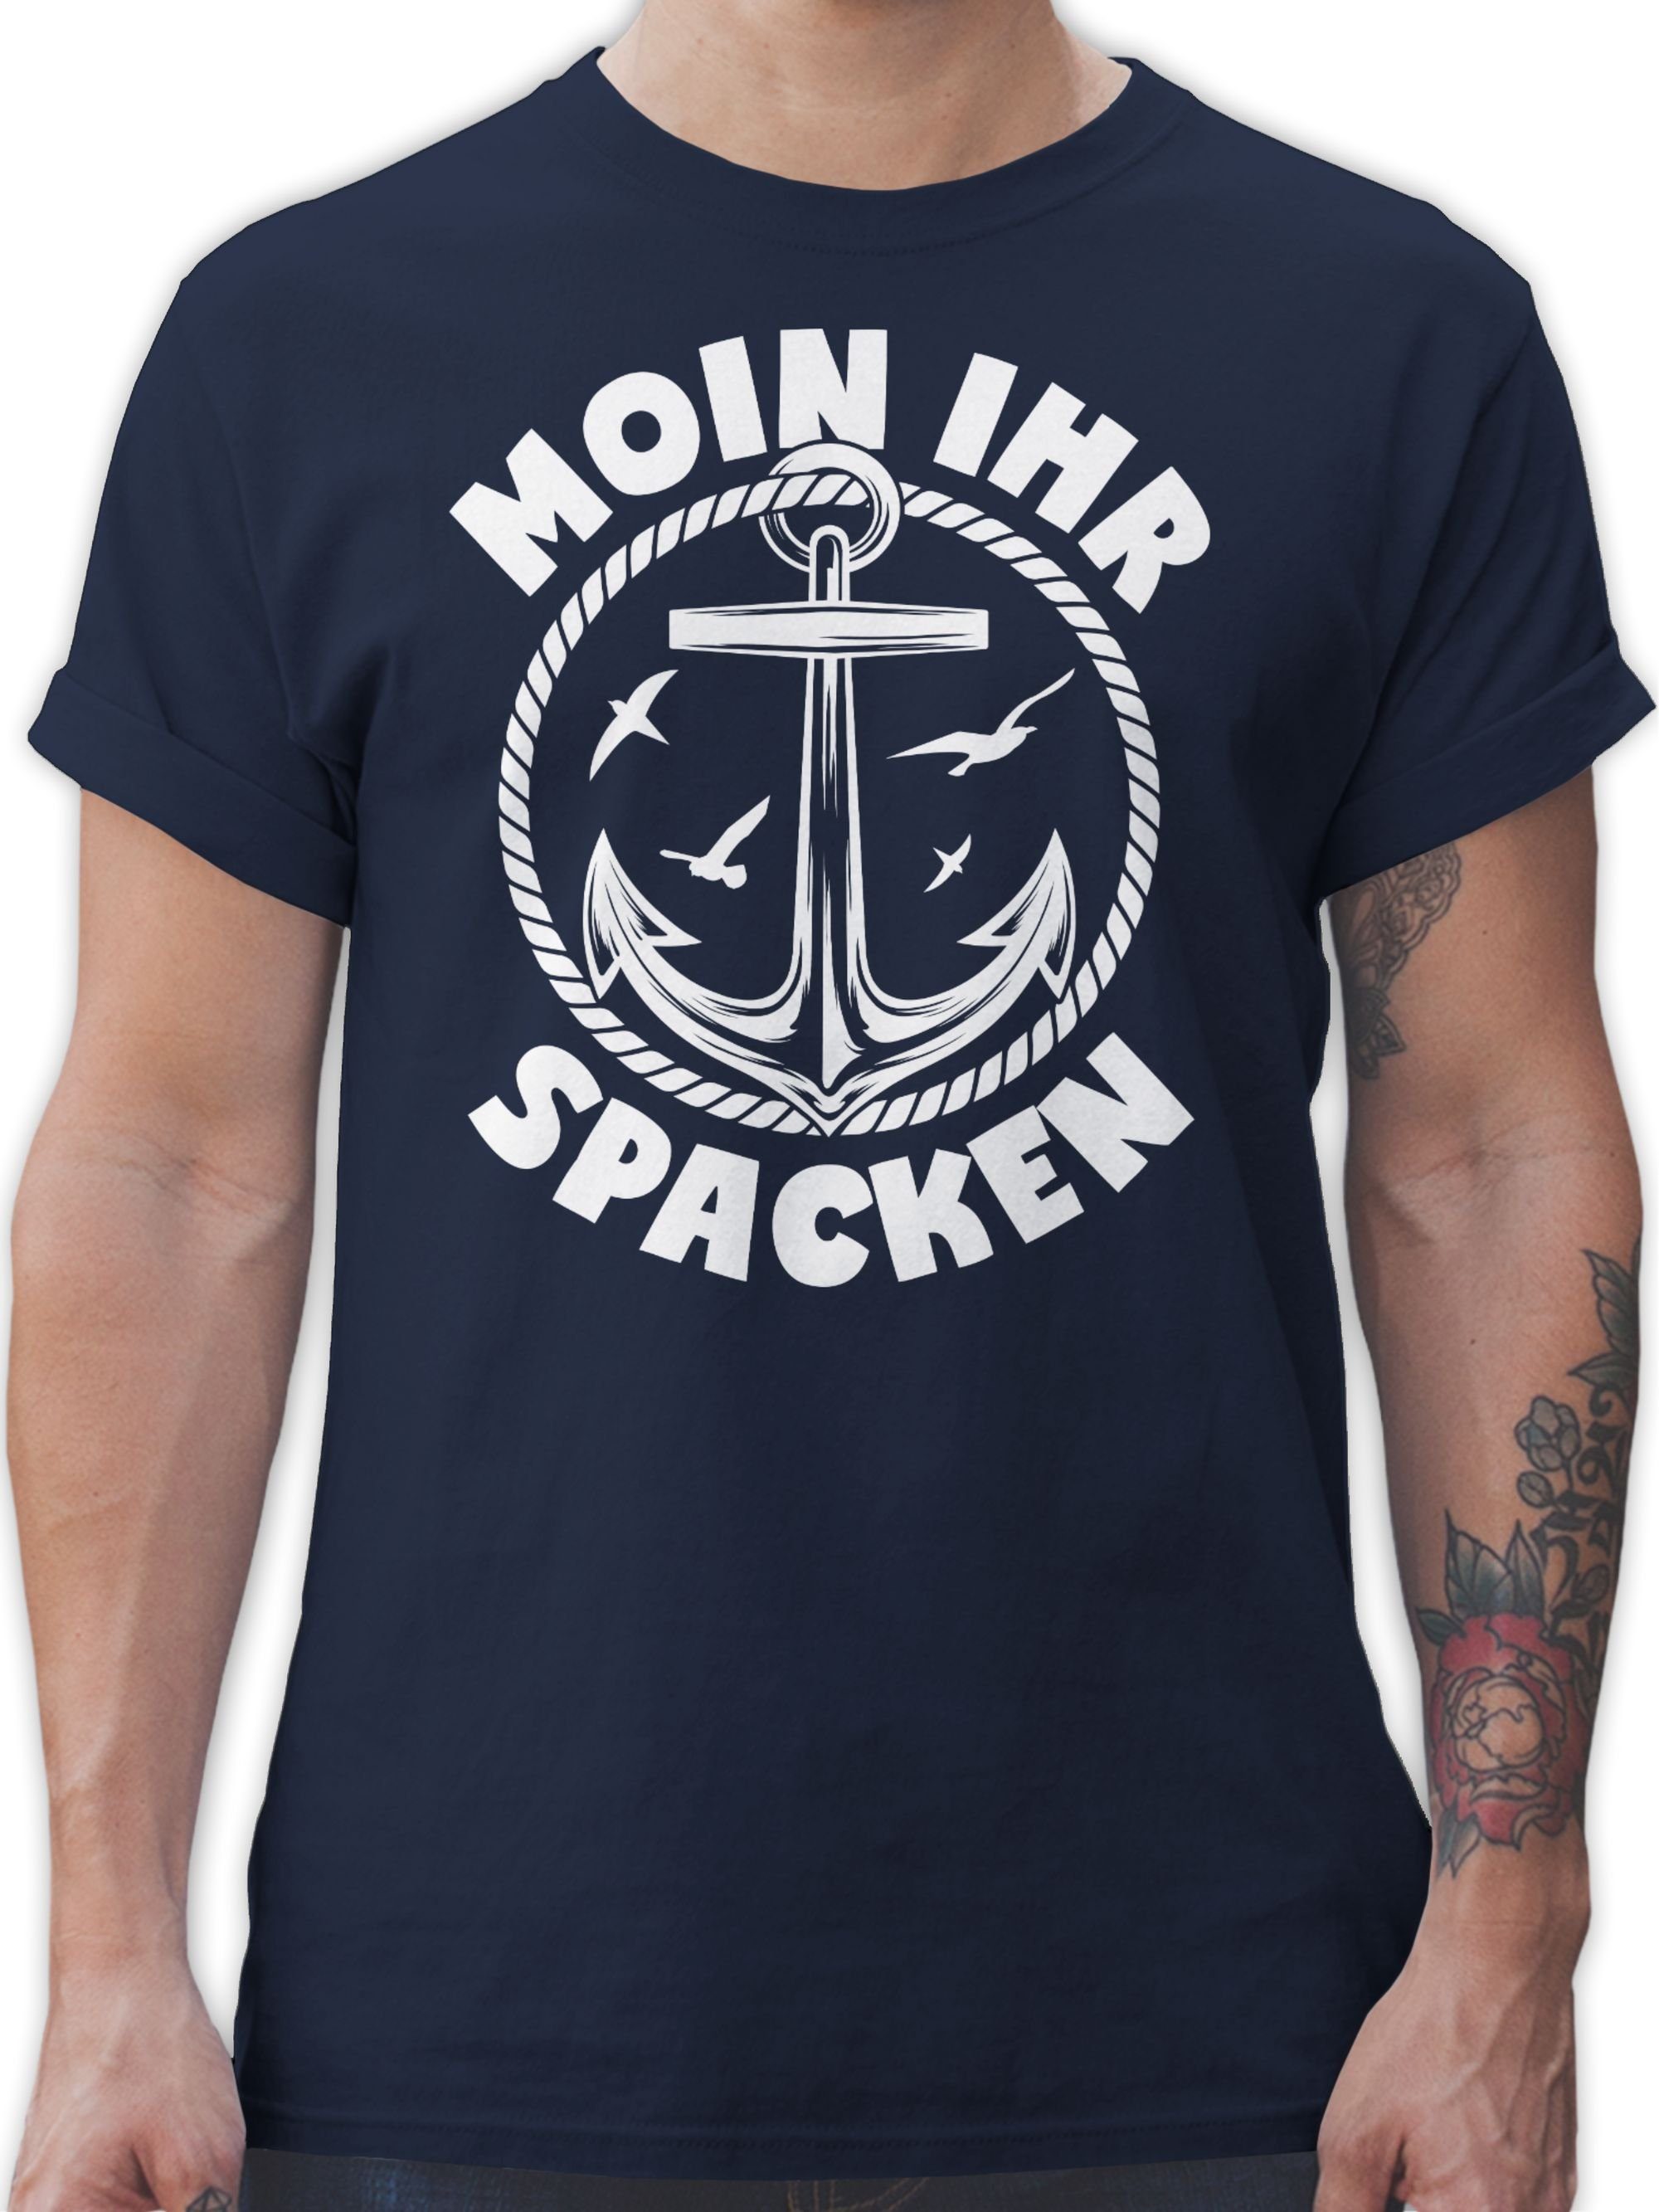 Shirtracer T-Shirt Moin ihr Spacken mit Anker - weiß Sprüche Statement mit Spruch 01 Navy Blau